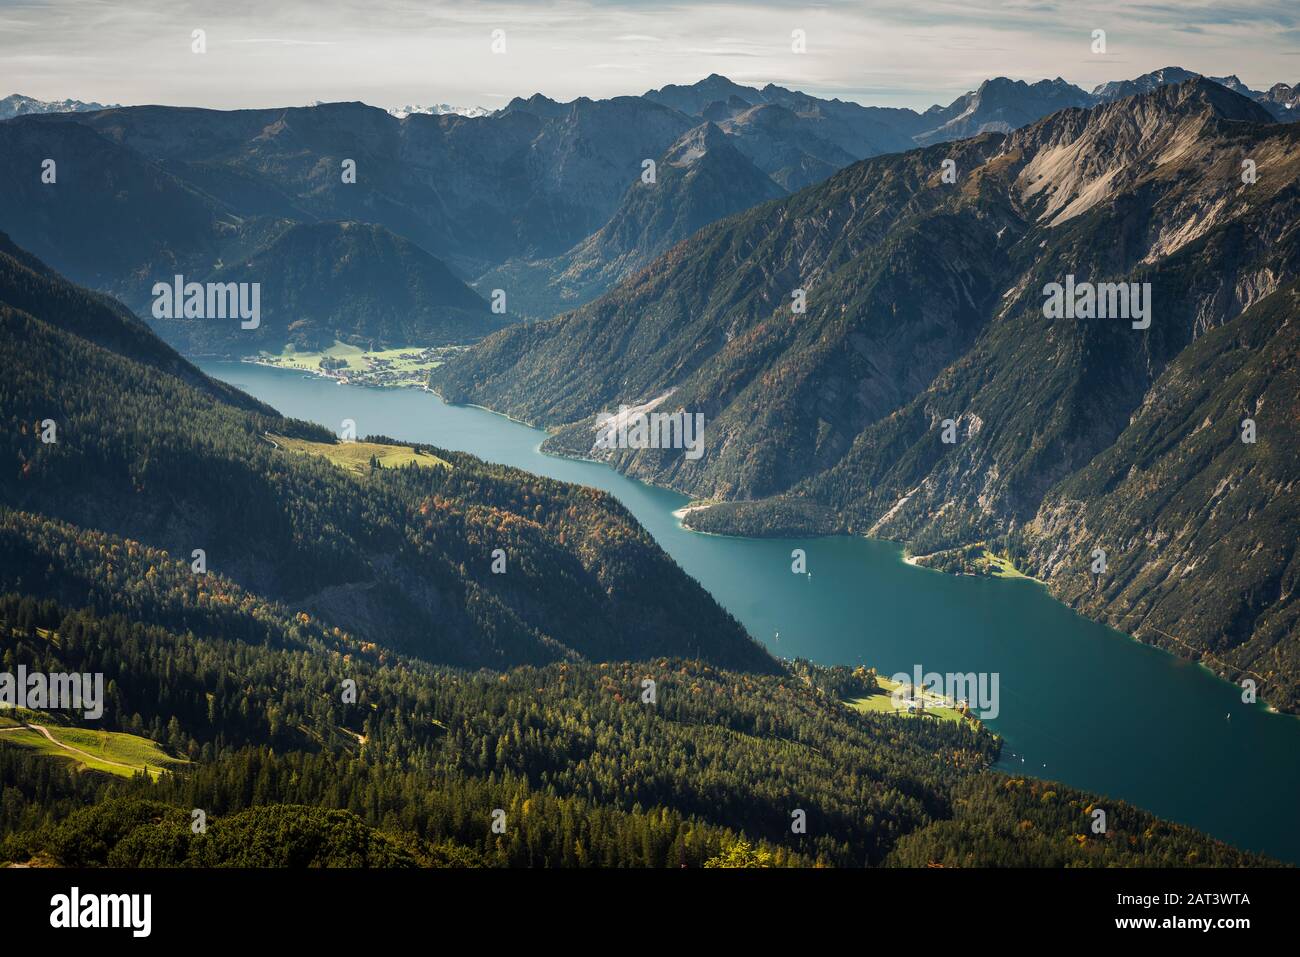 Blick vom Berg Vorderunnütz auf die Berglandschaft mit bunten Herbstwäldern und dem türkisfarbenen Fjordartigen Achensee, Tyrol, Österreich Stockfoto